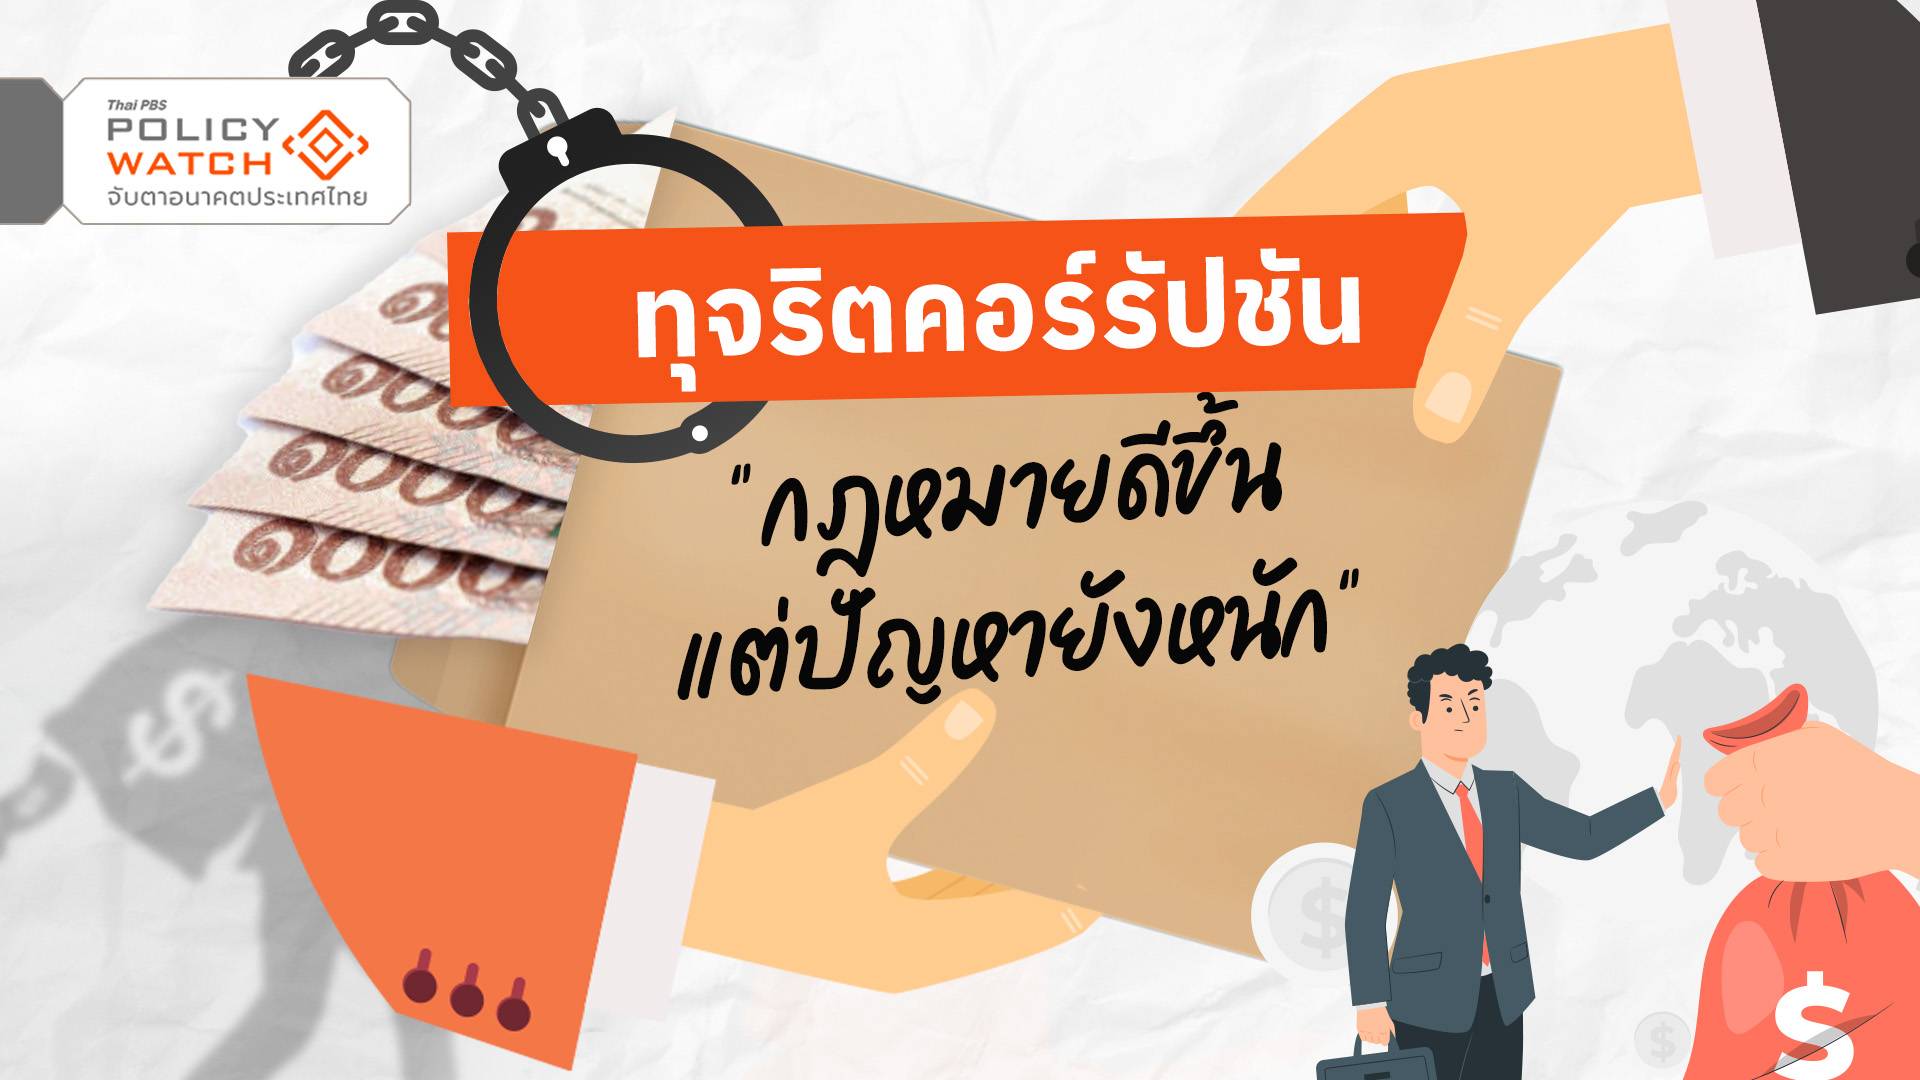 วันใหม่ ไทยพีบีเอส  Thai PBS รายการไทยพีบีเอส